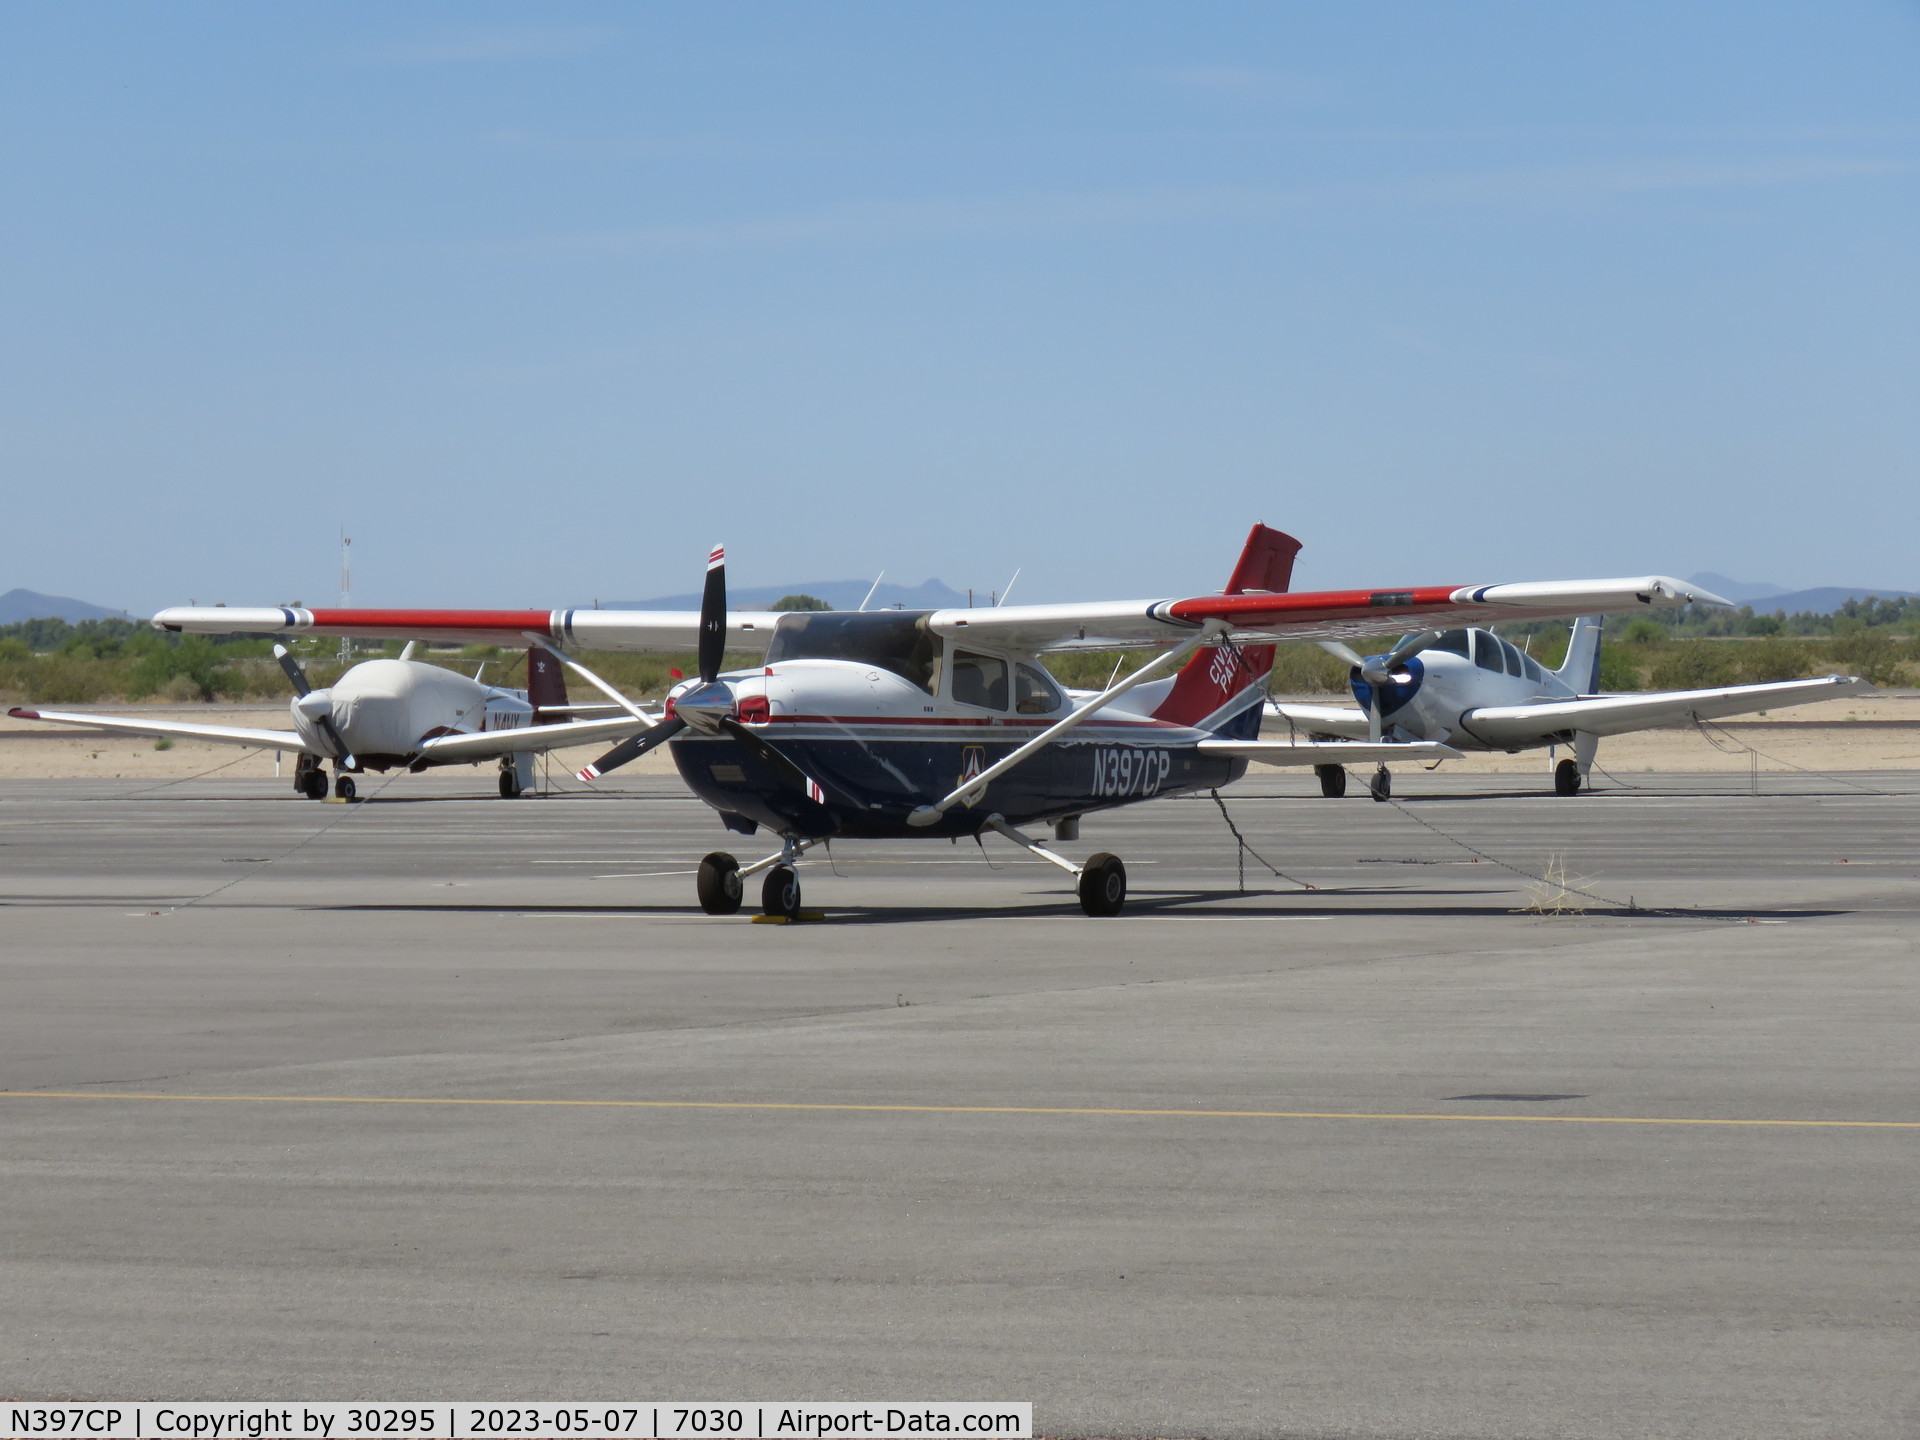 N397CP, Cessna 182T Skylane C/N 18282189, Parked